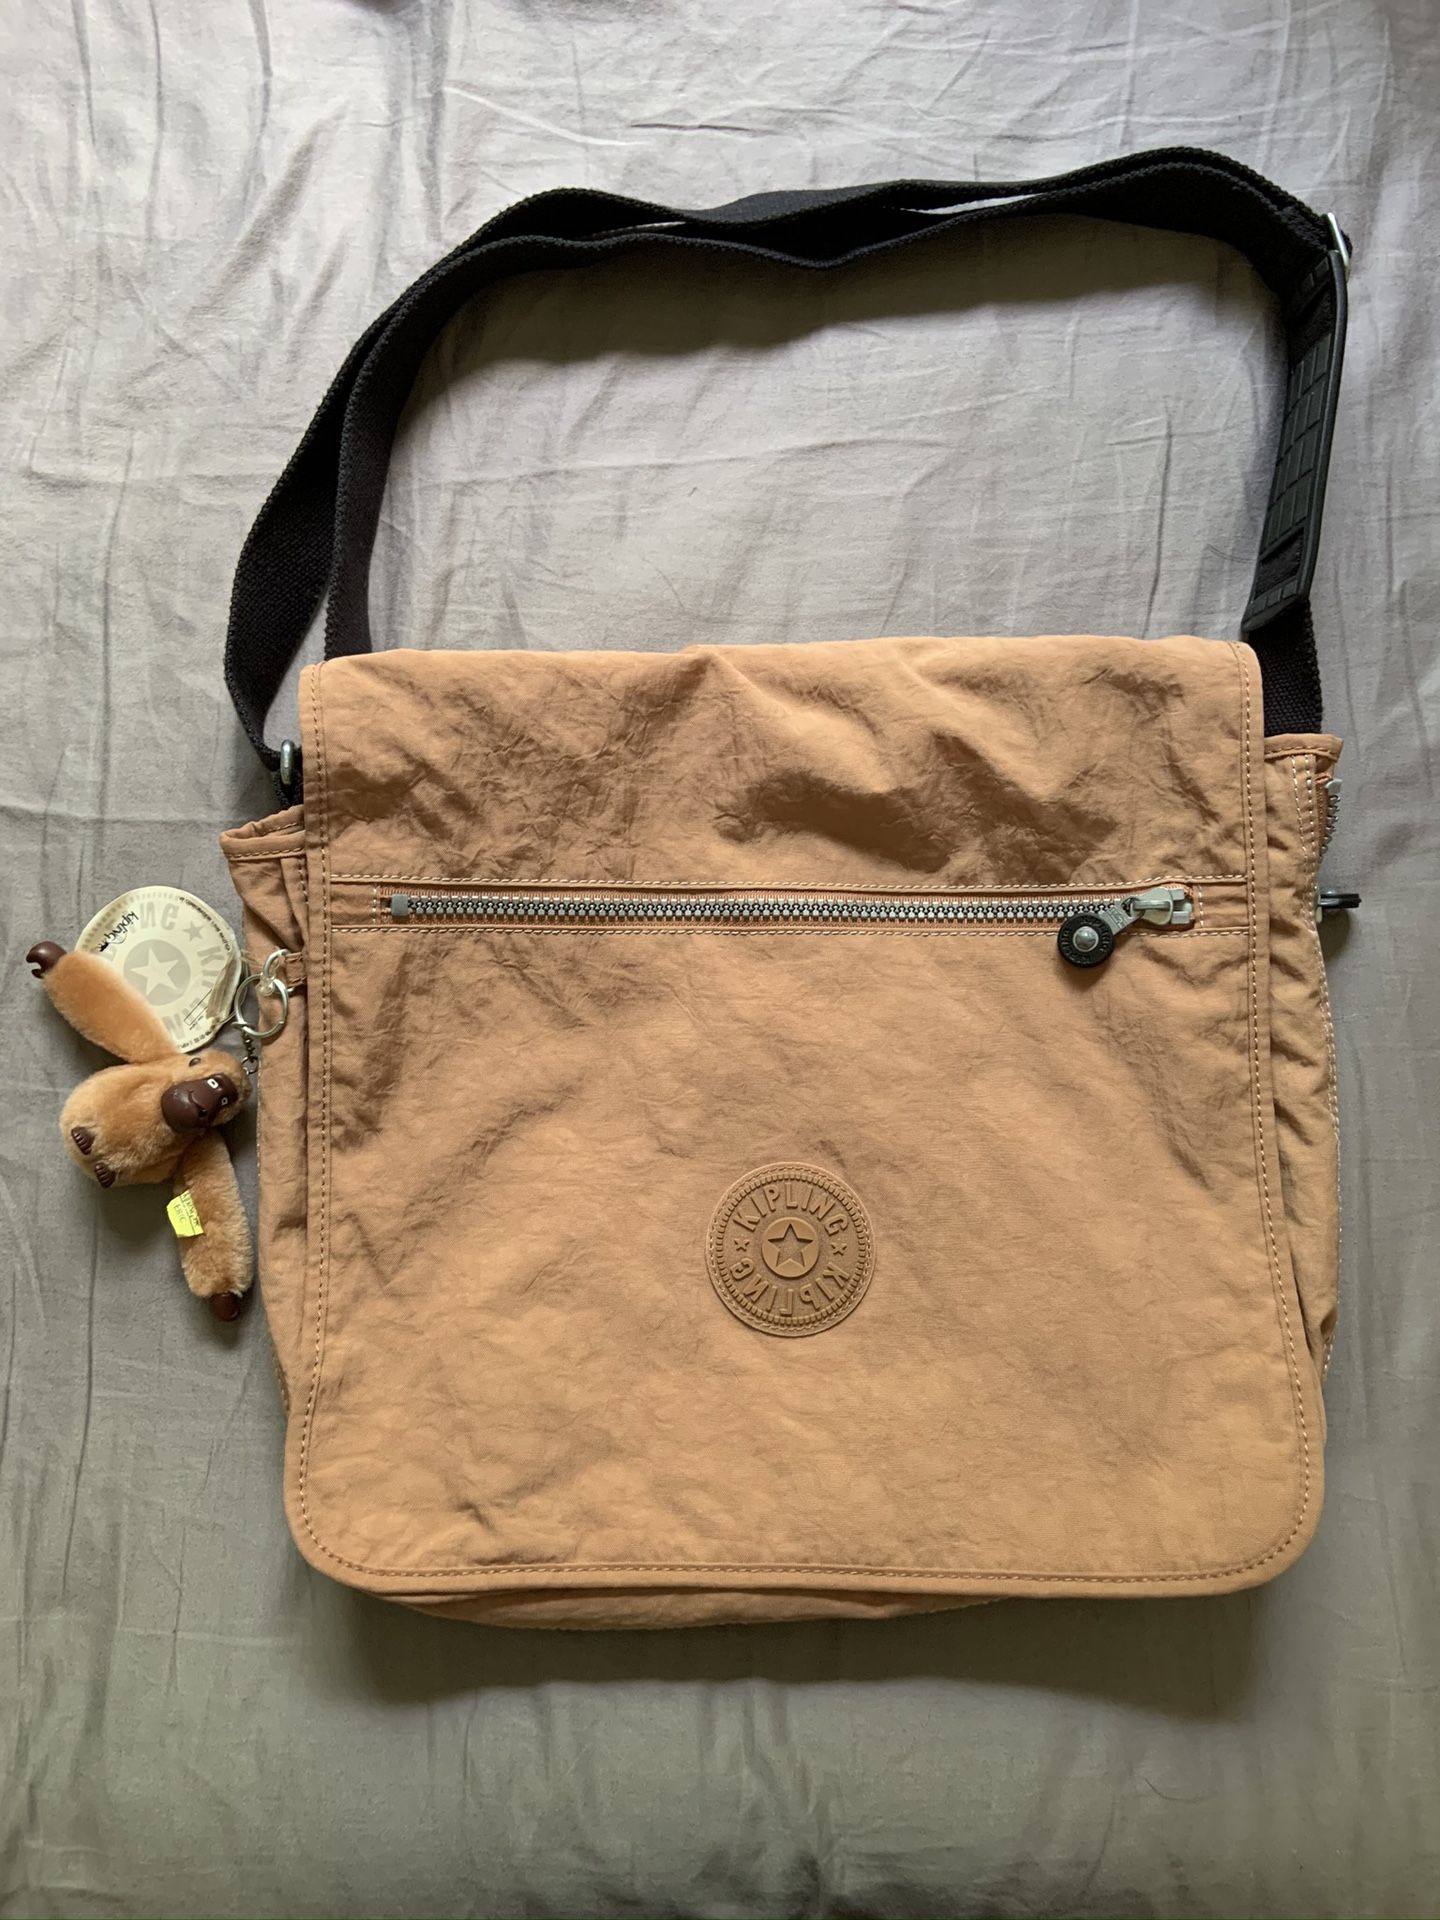 Kipling Madhouse Messenger Bag Includes Kipling Monkey keychain